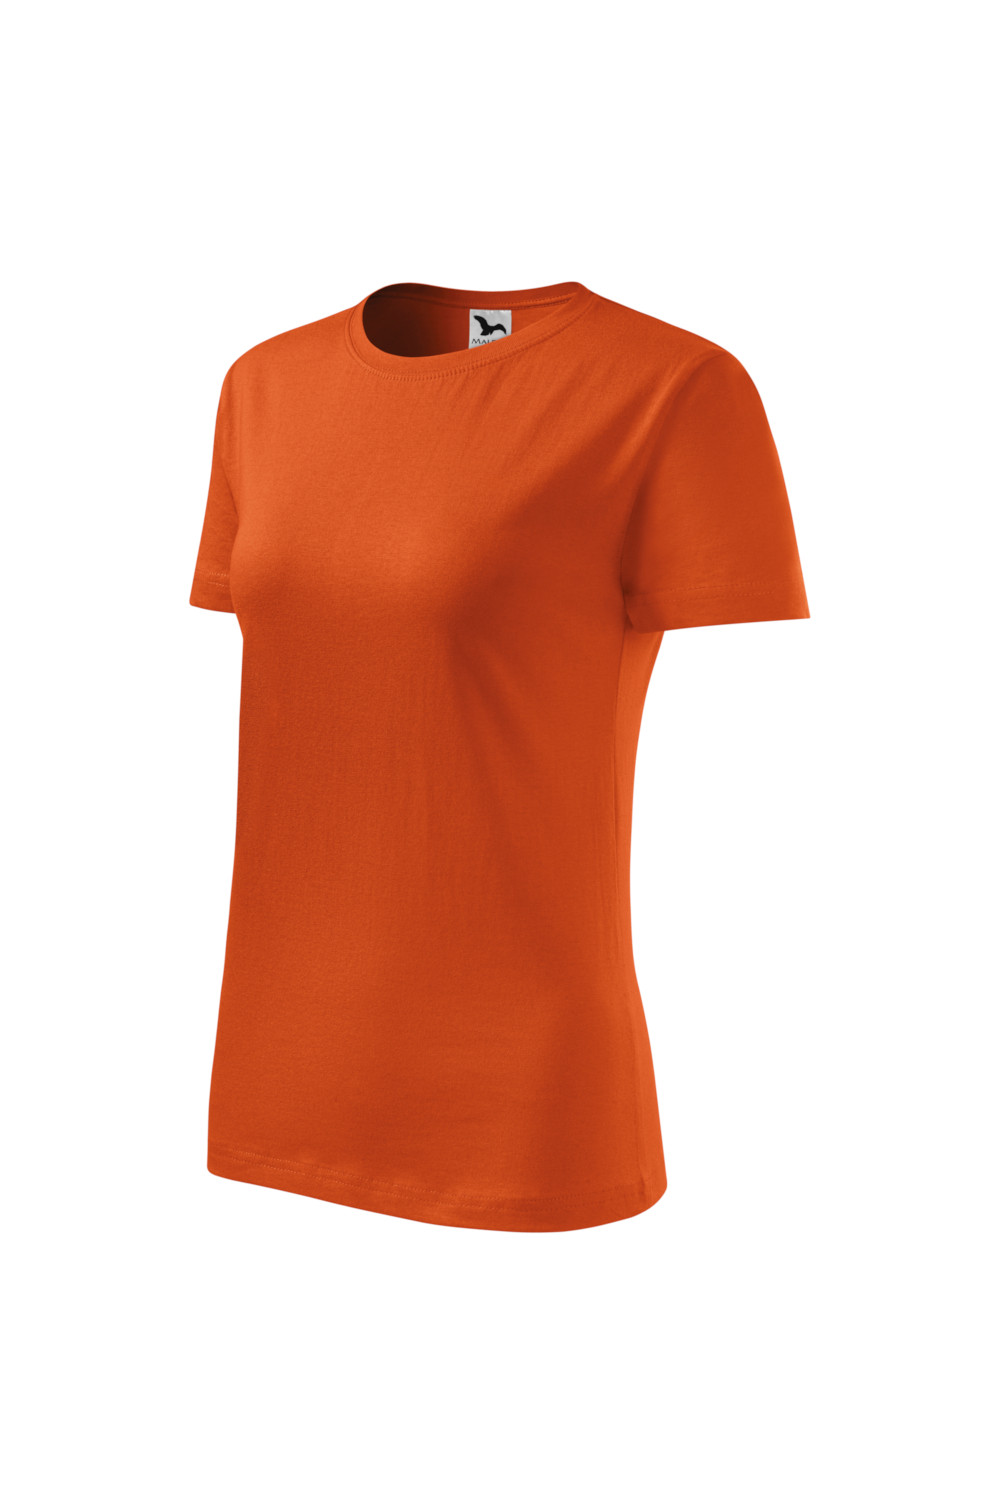 CLASSIC 133 MALFINI Koszulka damska 100% bawełna t-shirt pomarańczowy